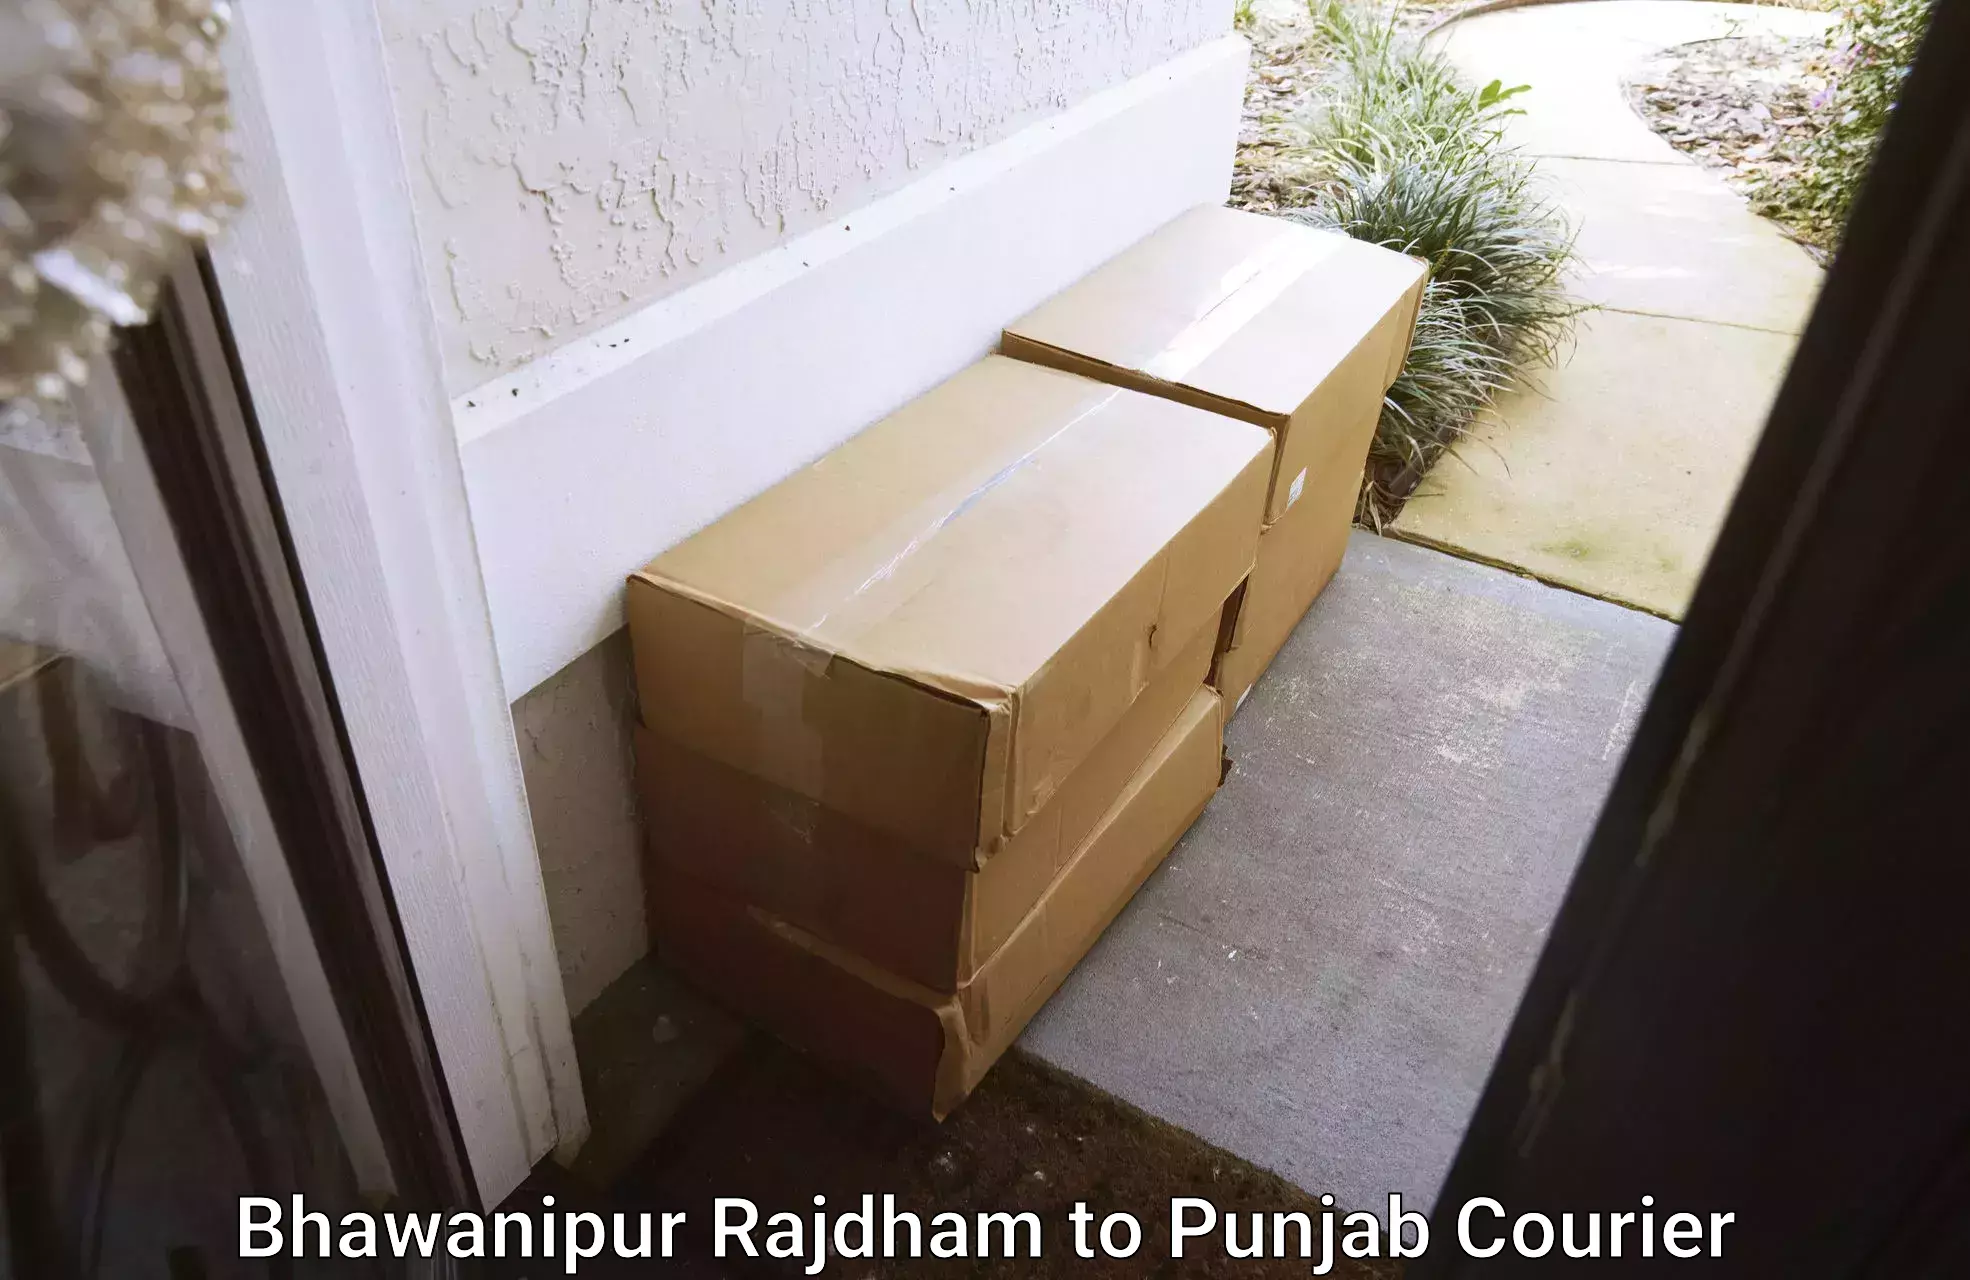 Furniture moving experts in Bhawanipur Rajdham to Punjab